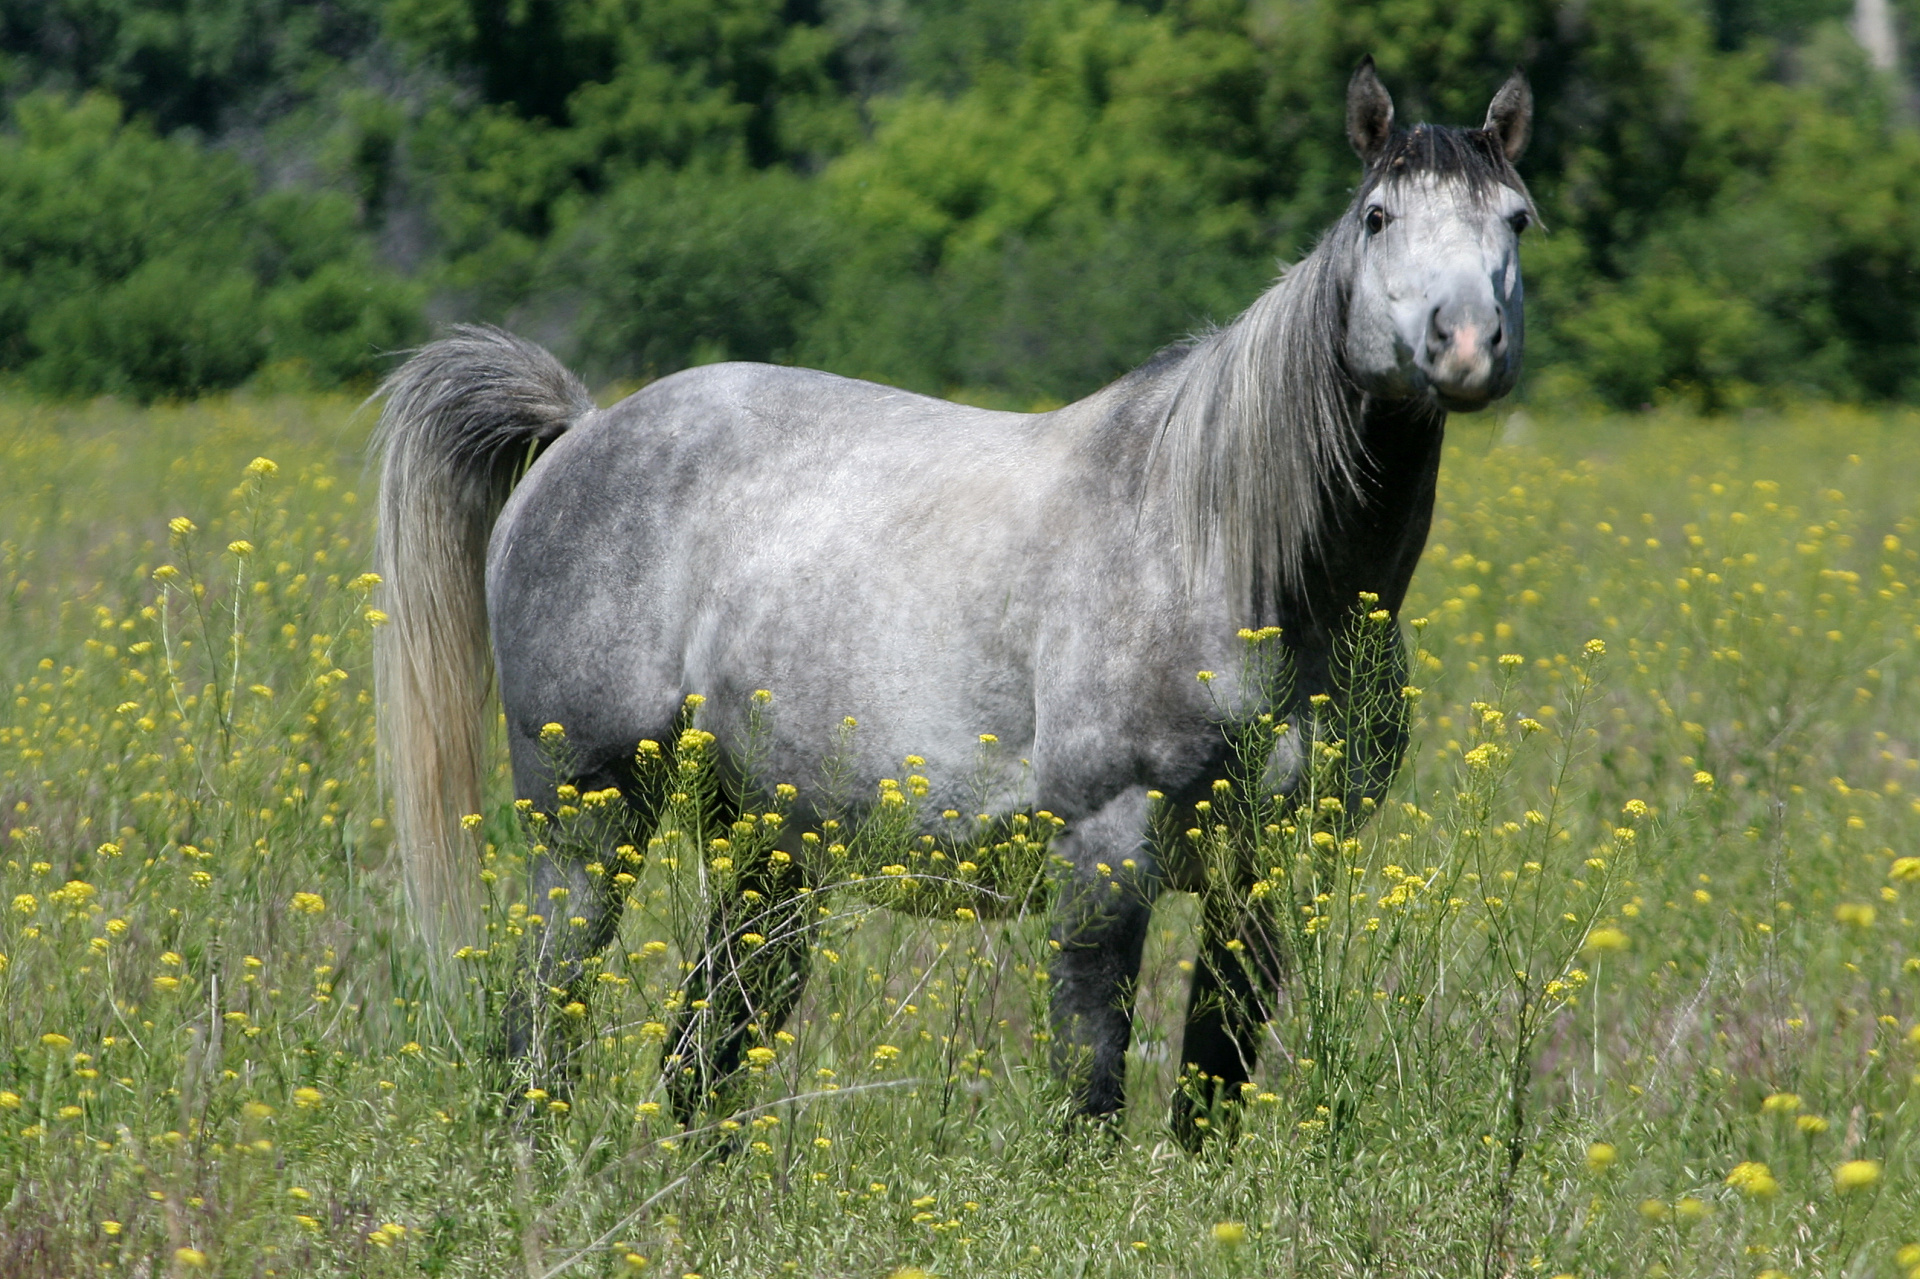 IMG_3759 (Podróże » USA: Epopeja Czejeńska » Zwierzęta » Konie)